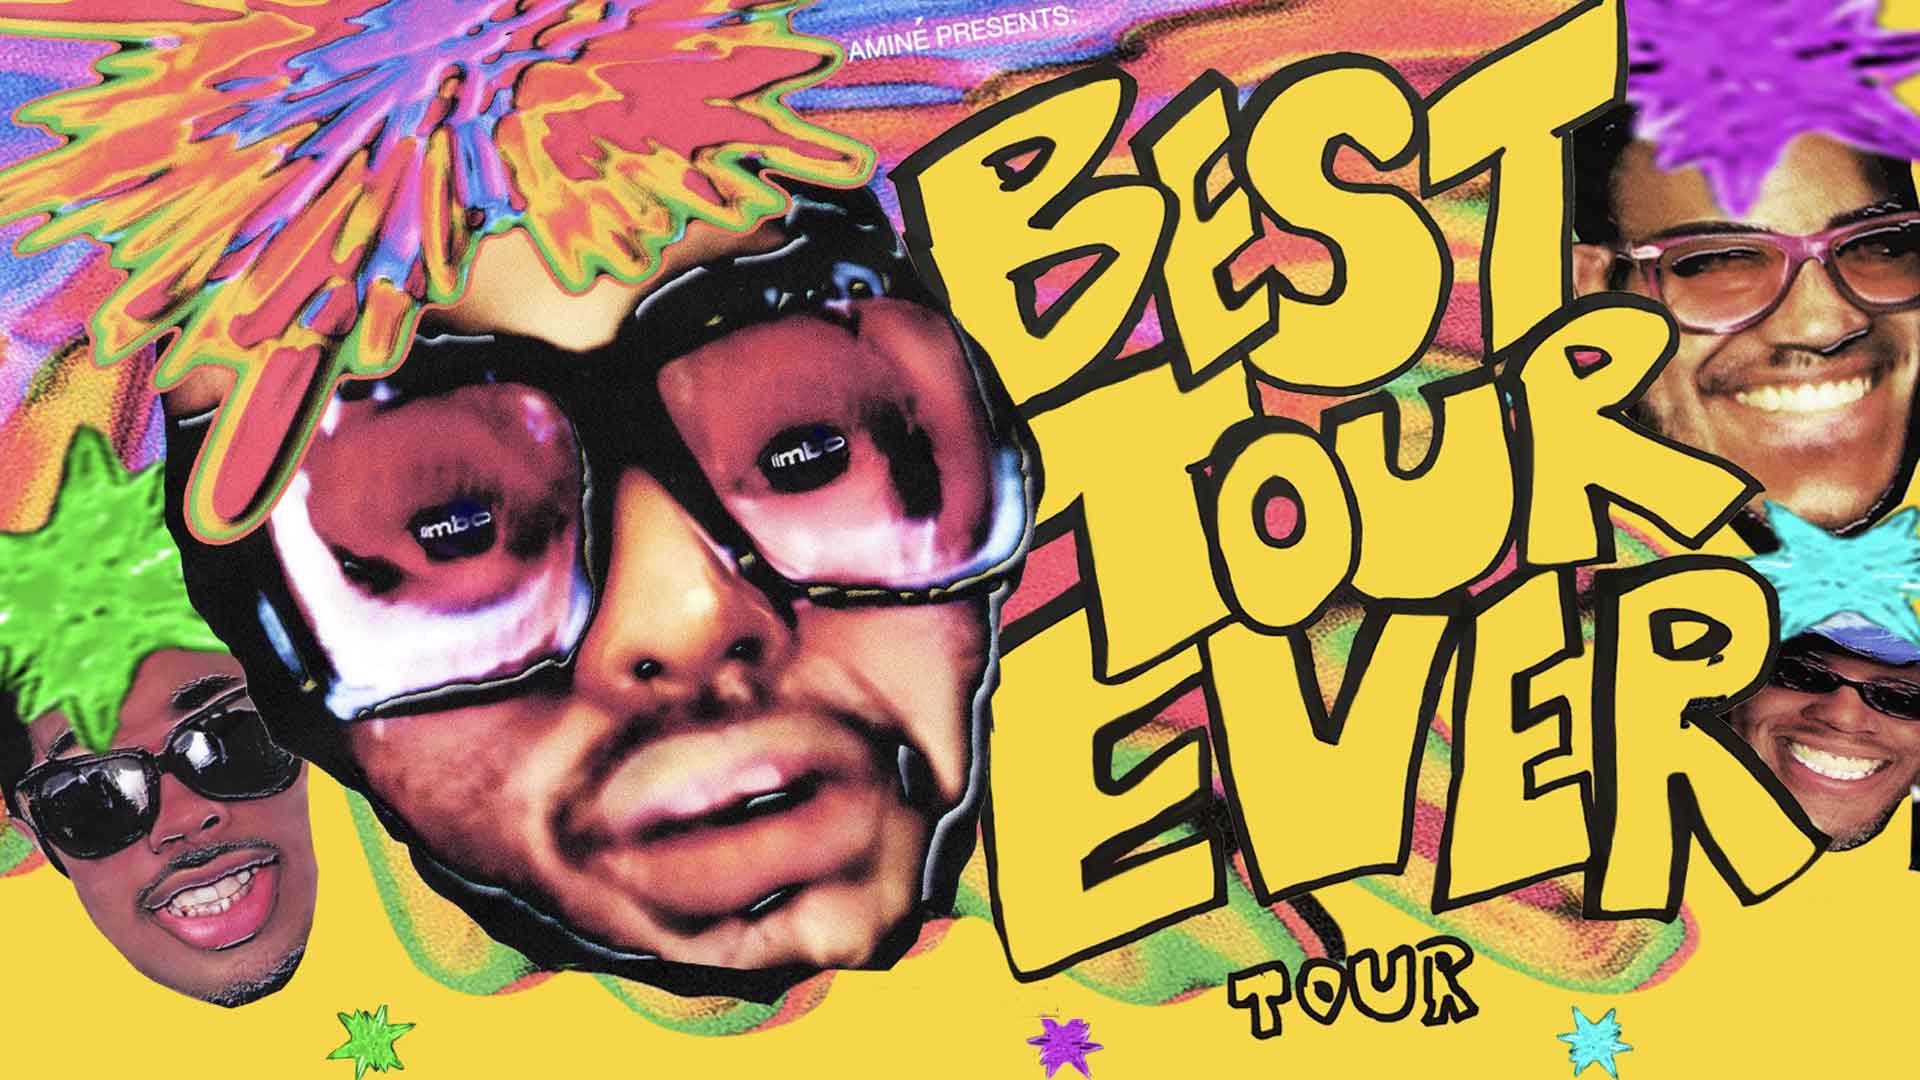 the best tour ever tour